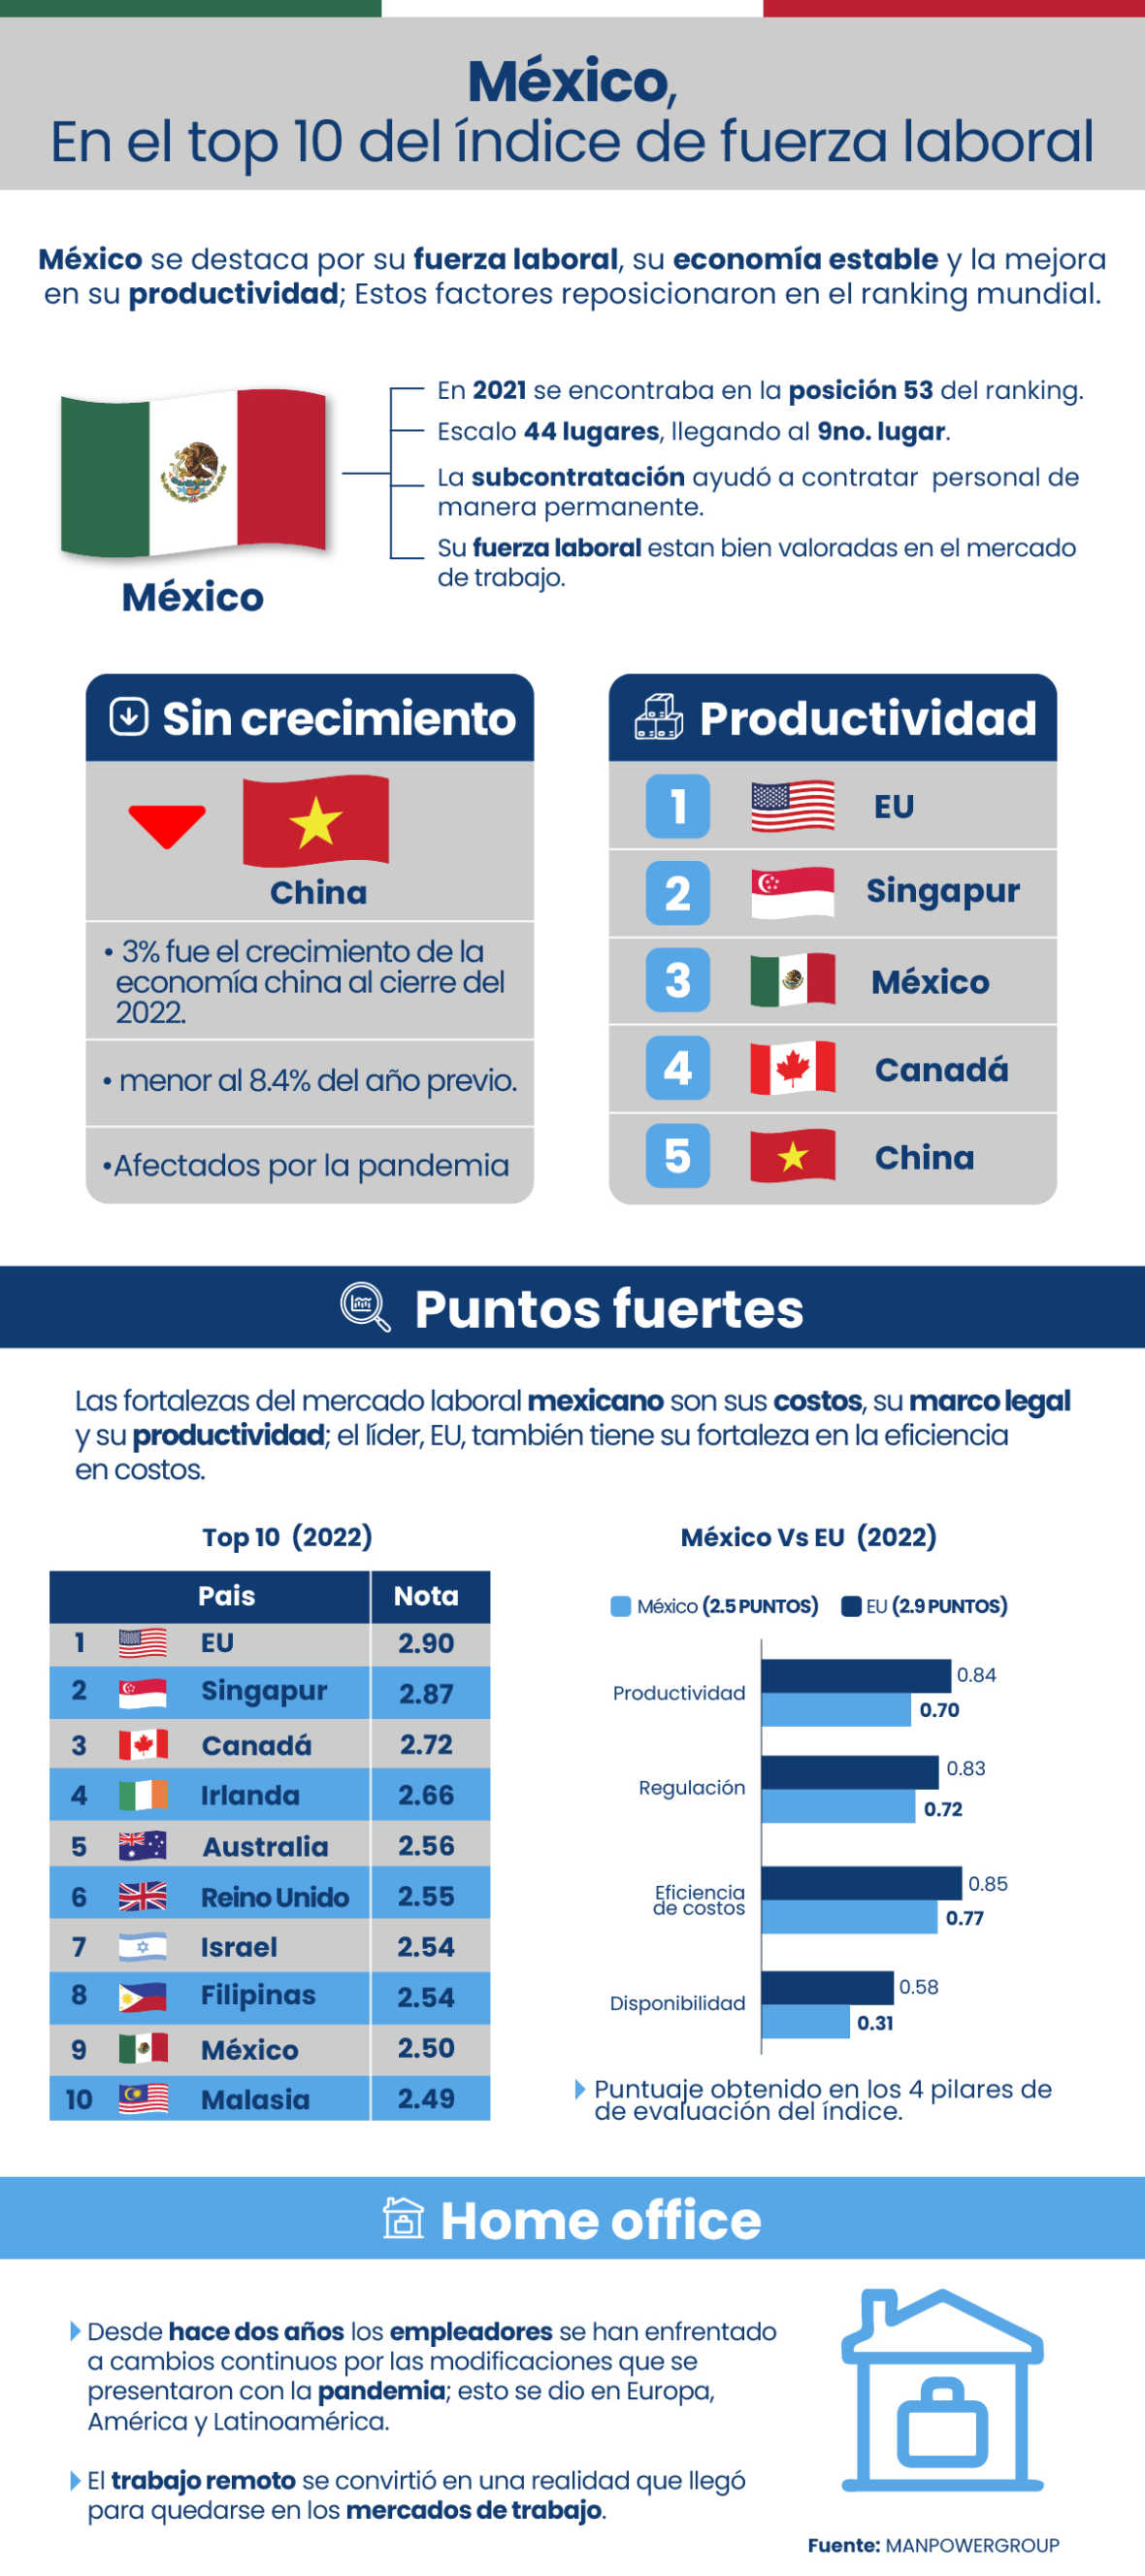 México, en el top 10 del índice de fuerza laboral